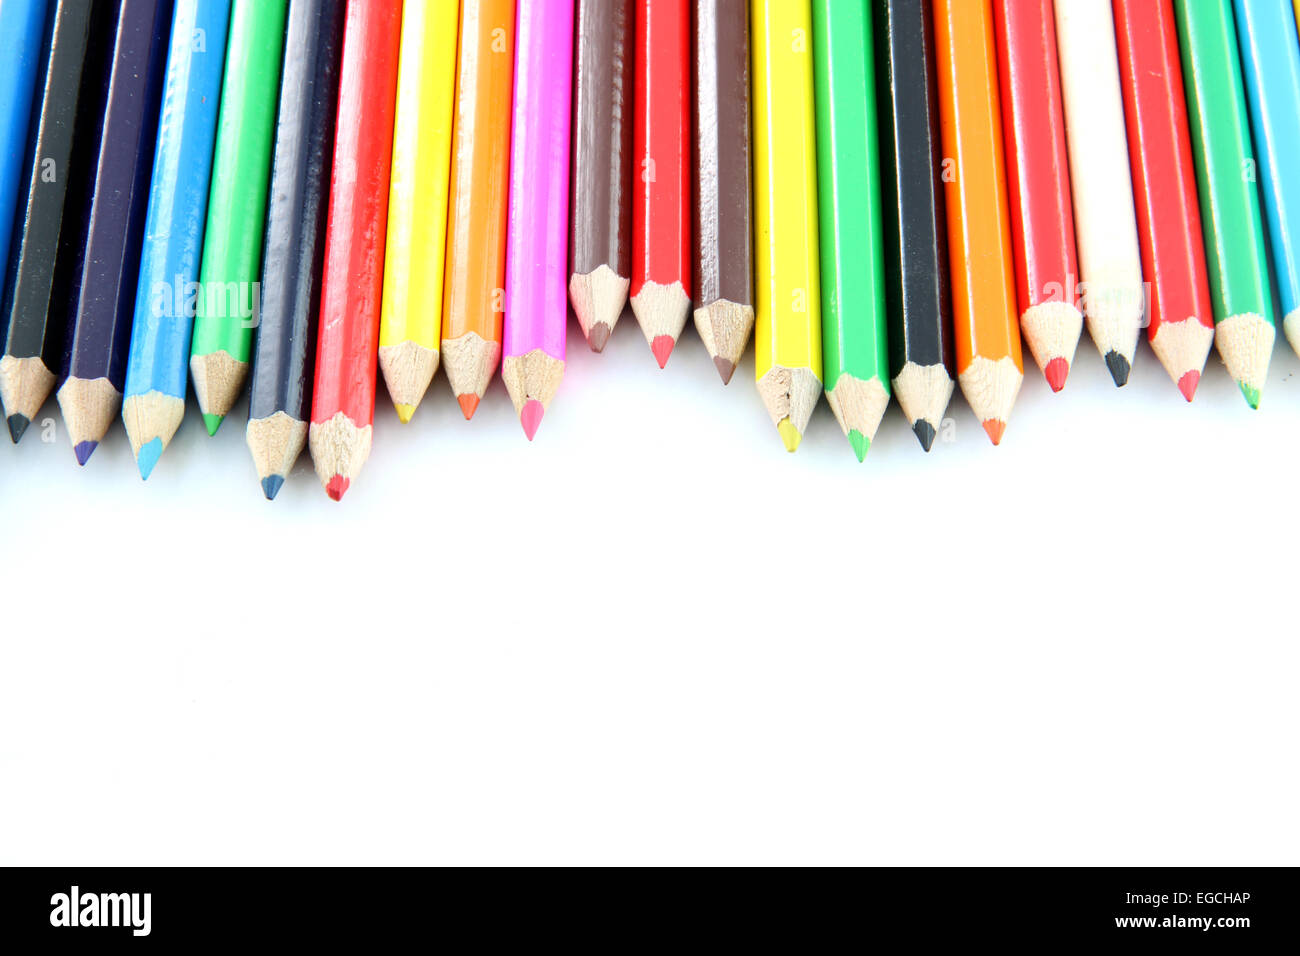 Crayons de couleur mix sur un fond blanc. Banque D'Images